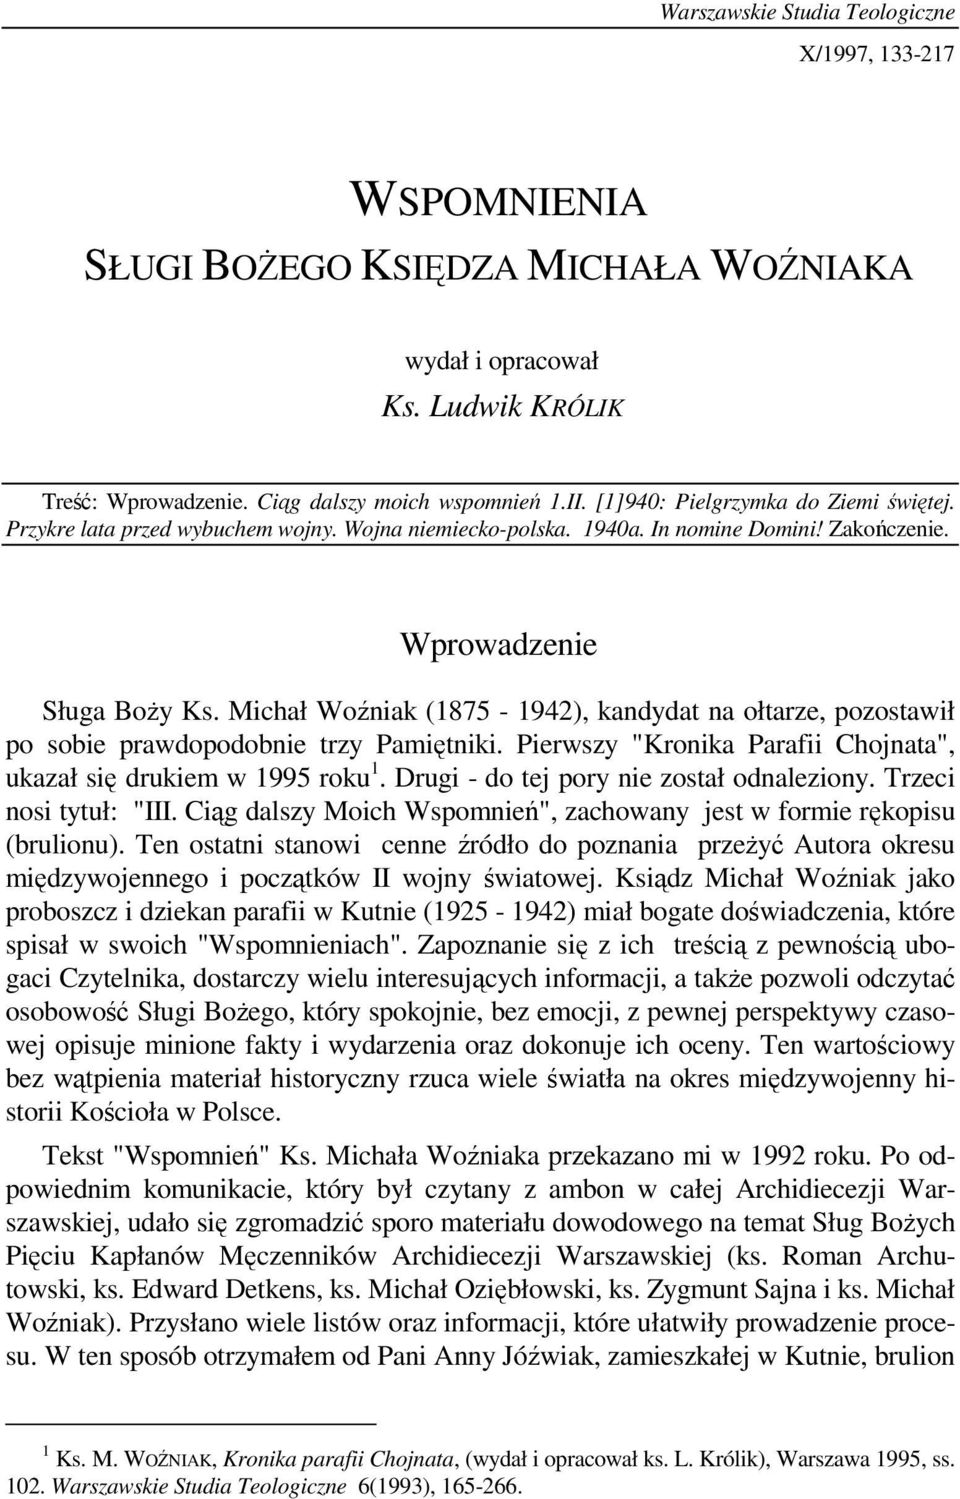 Michał Woźniak (1875-1942), kandydat na ołtarze, pozostawił po sobie prawdopodobnie trzy Pamiętniki. Pierwszy "Kronika Parafii Chojnata", ukazał się drukiem w 1995 roku 1.